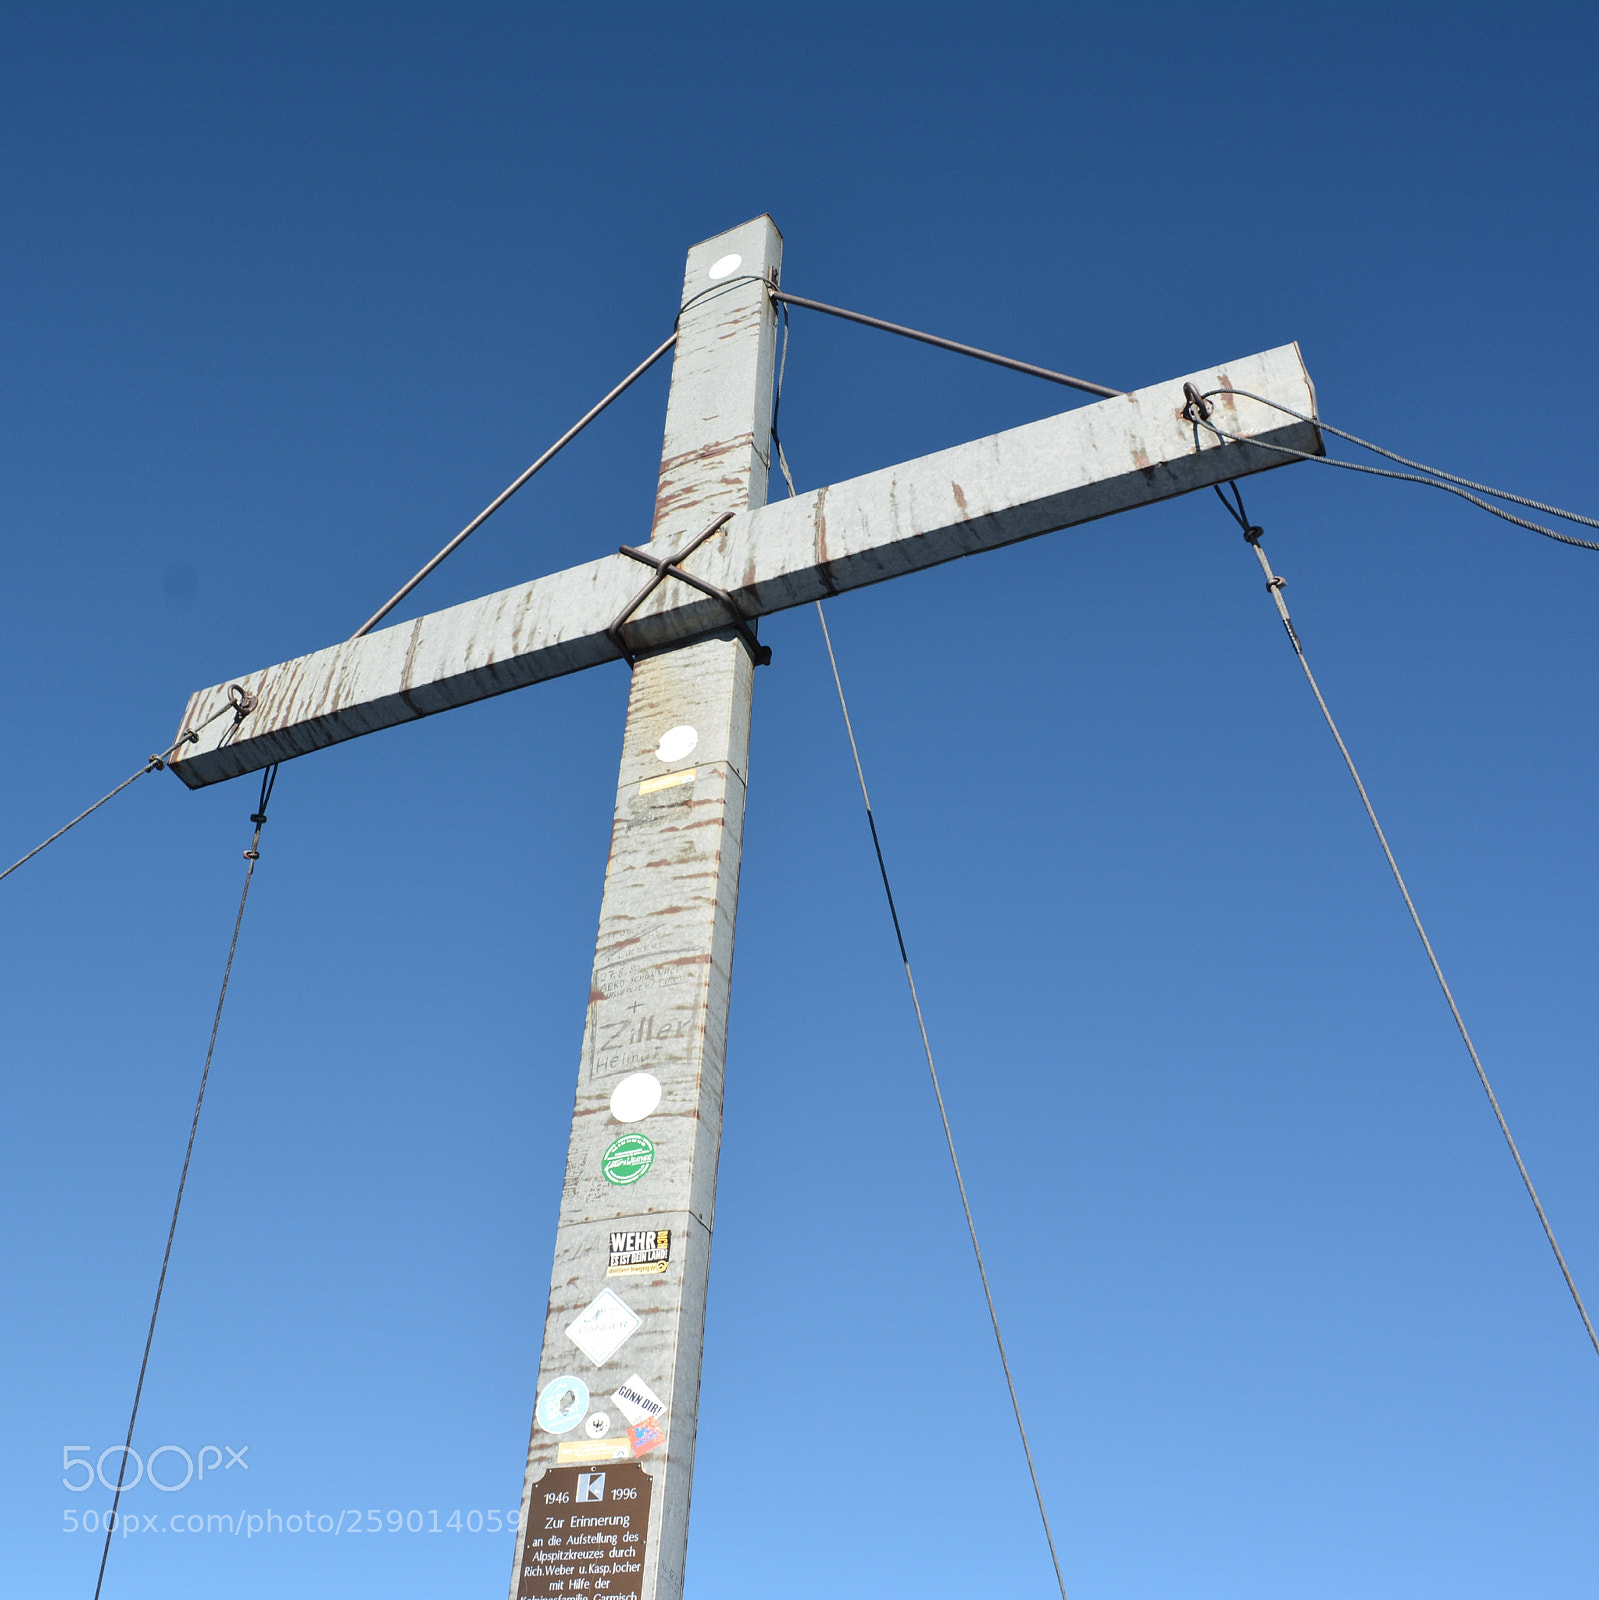 Nikon D7100 sample photo. Gipfelkreuz auf der alpspitze photography